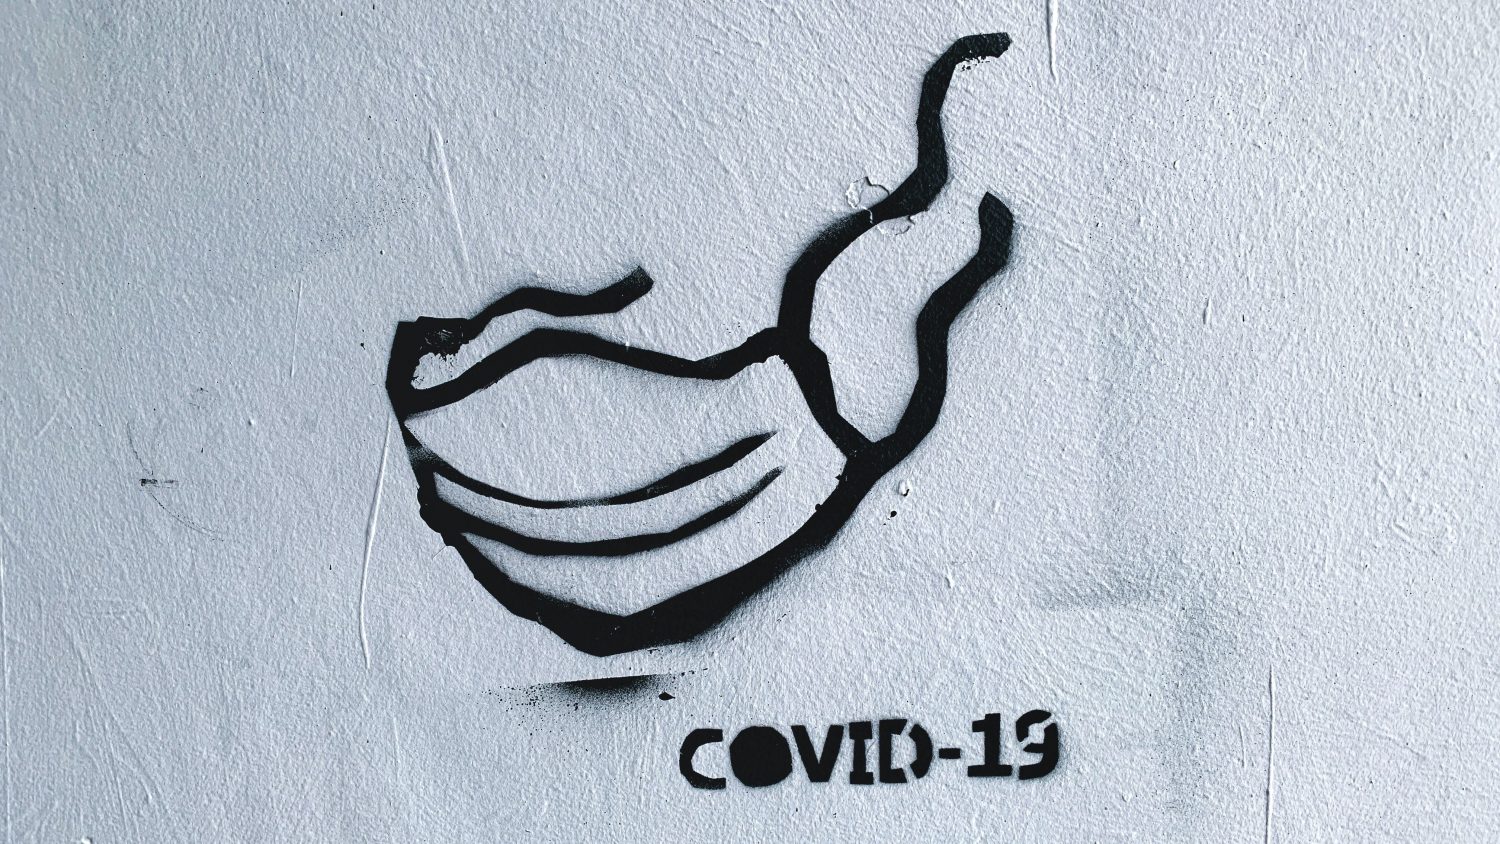 COVID-19 graffiti art